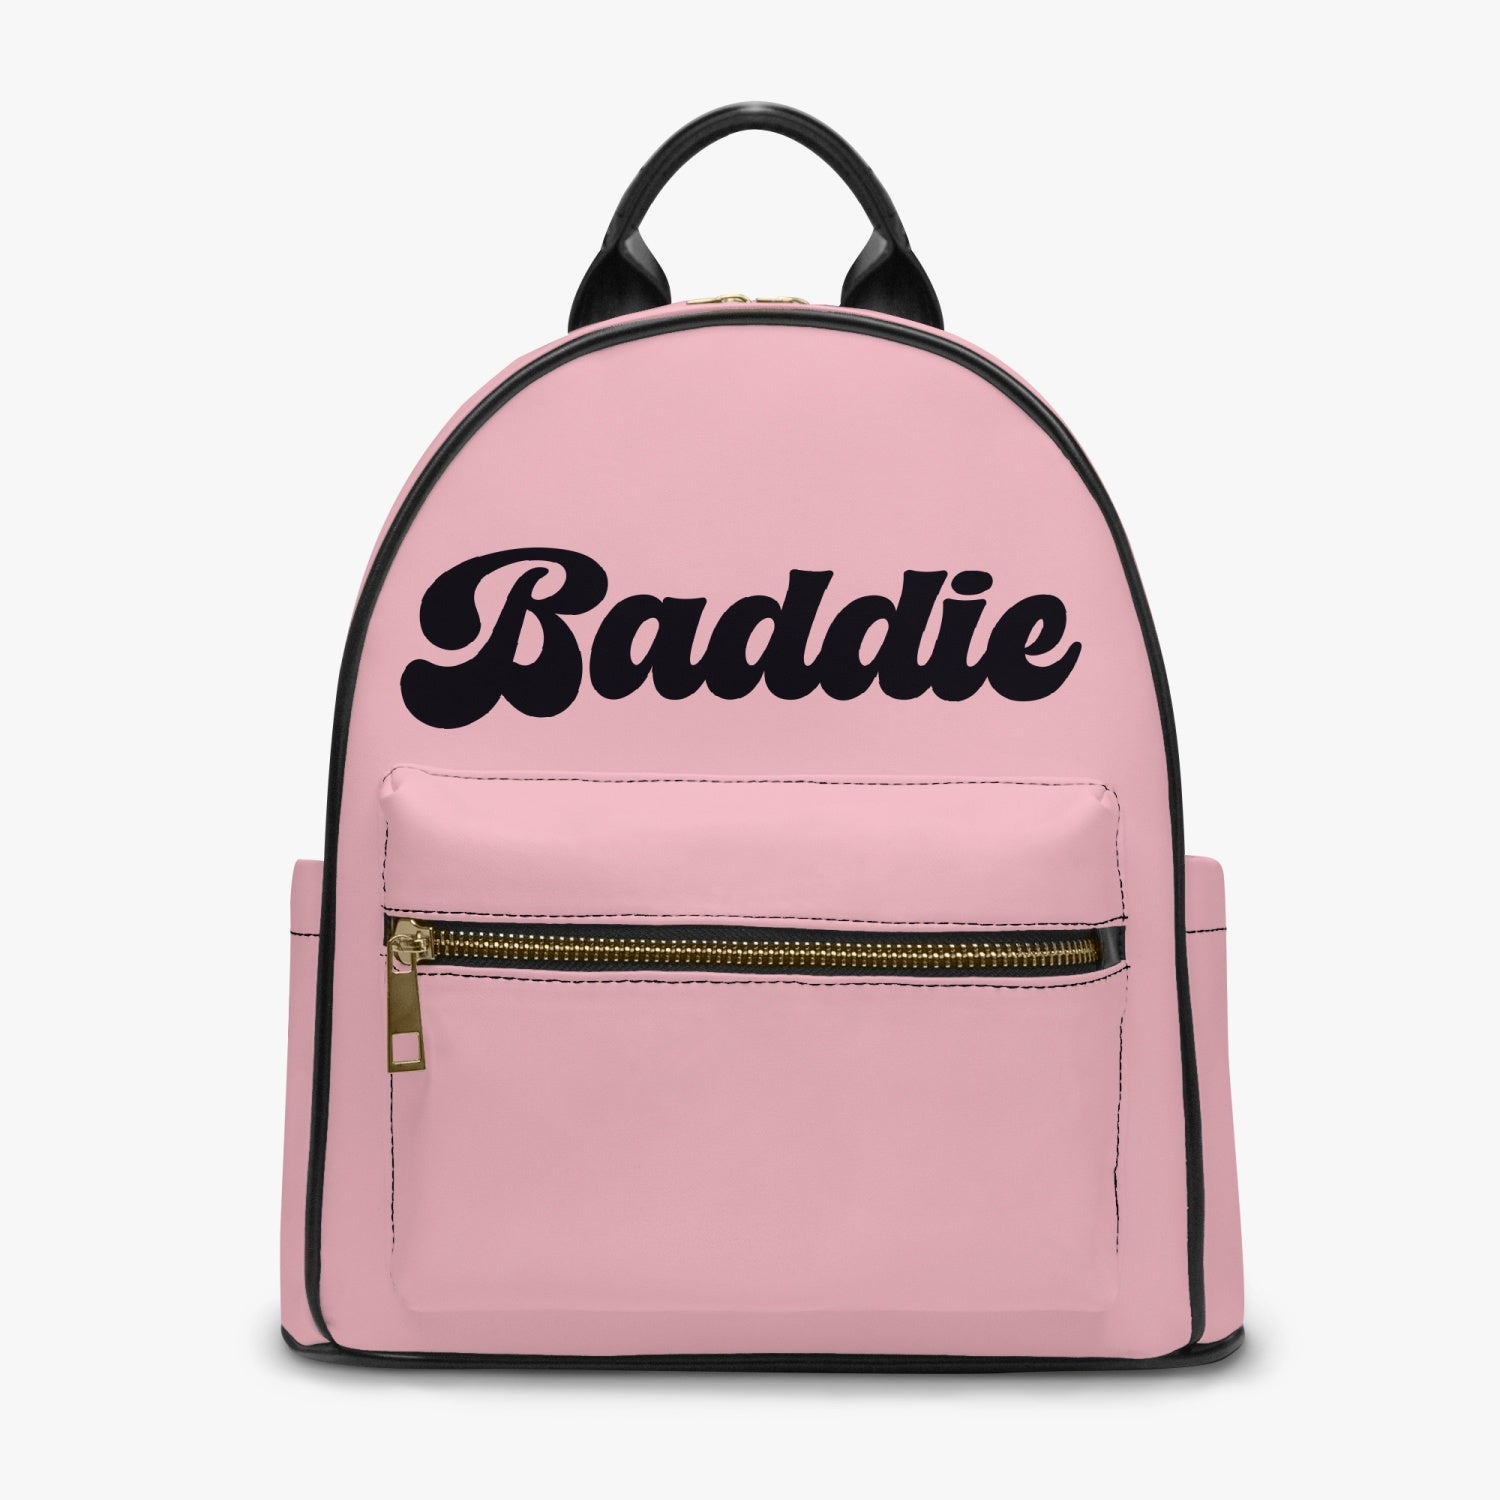 Baddie Backpack